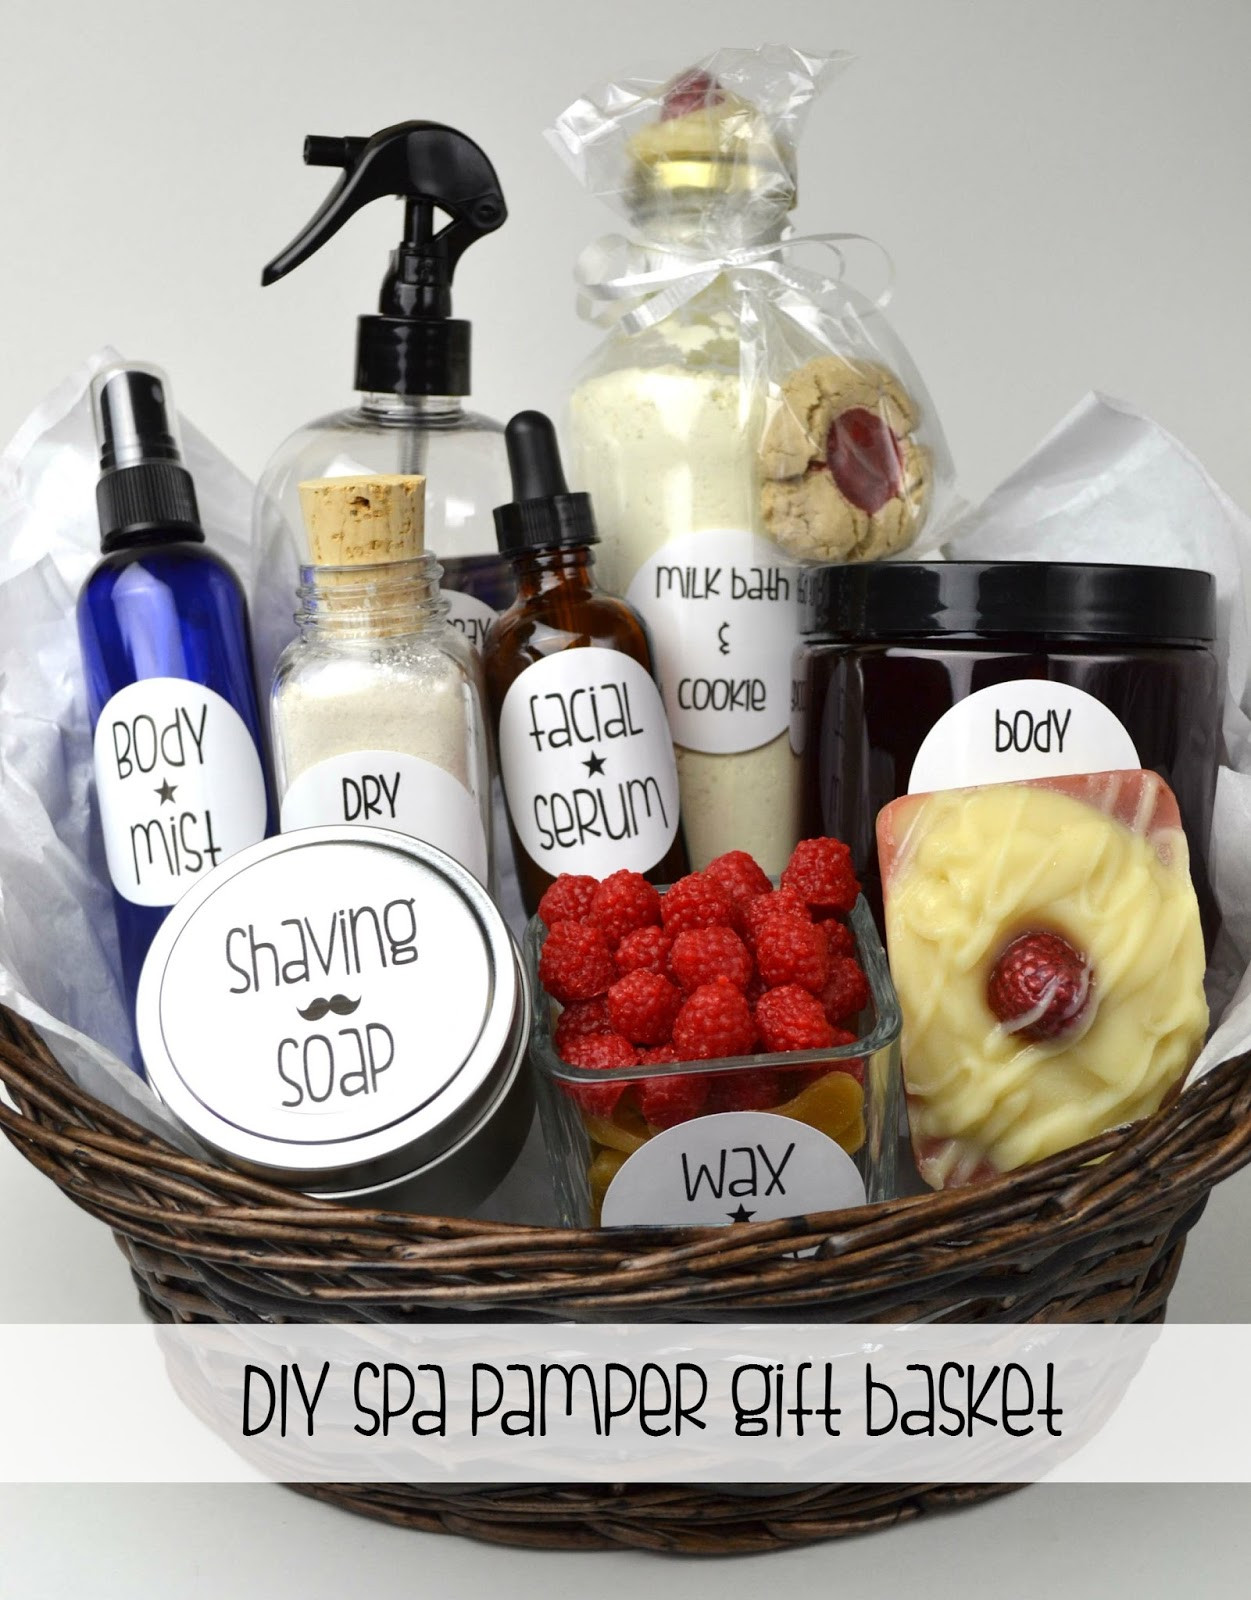 Pamper Gift Basket Ideas
 Oil & Butter DIY Spa Pamper Gift Basket